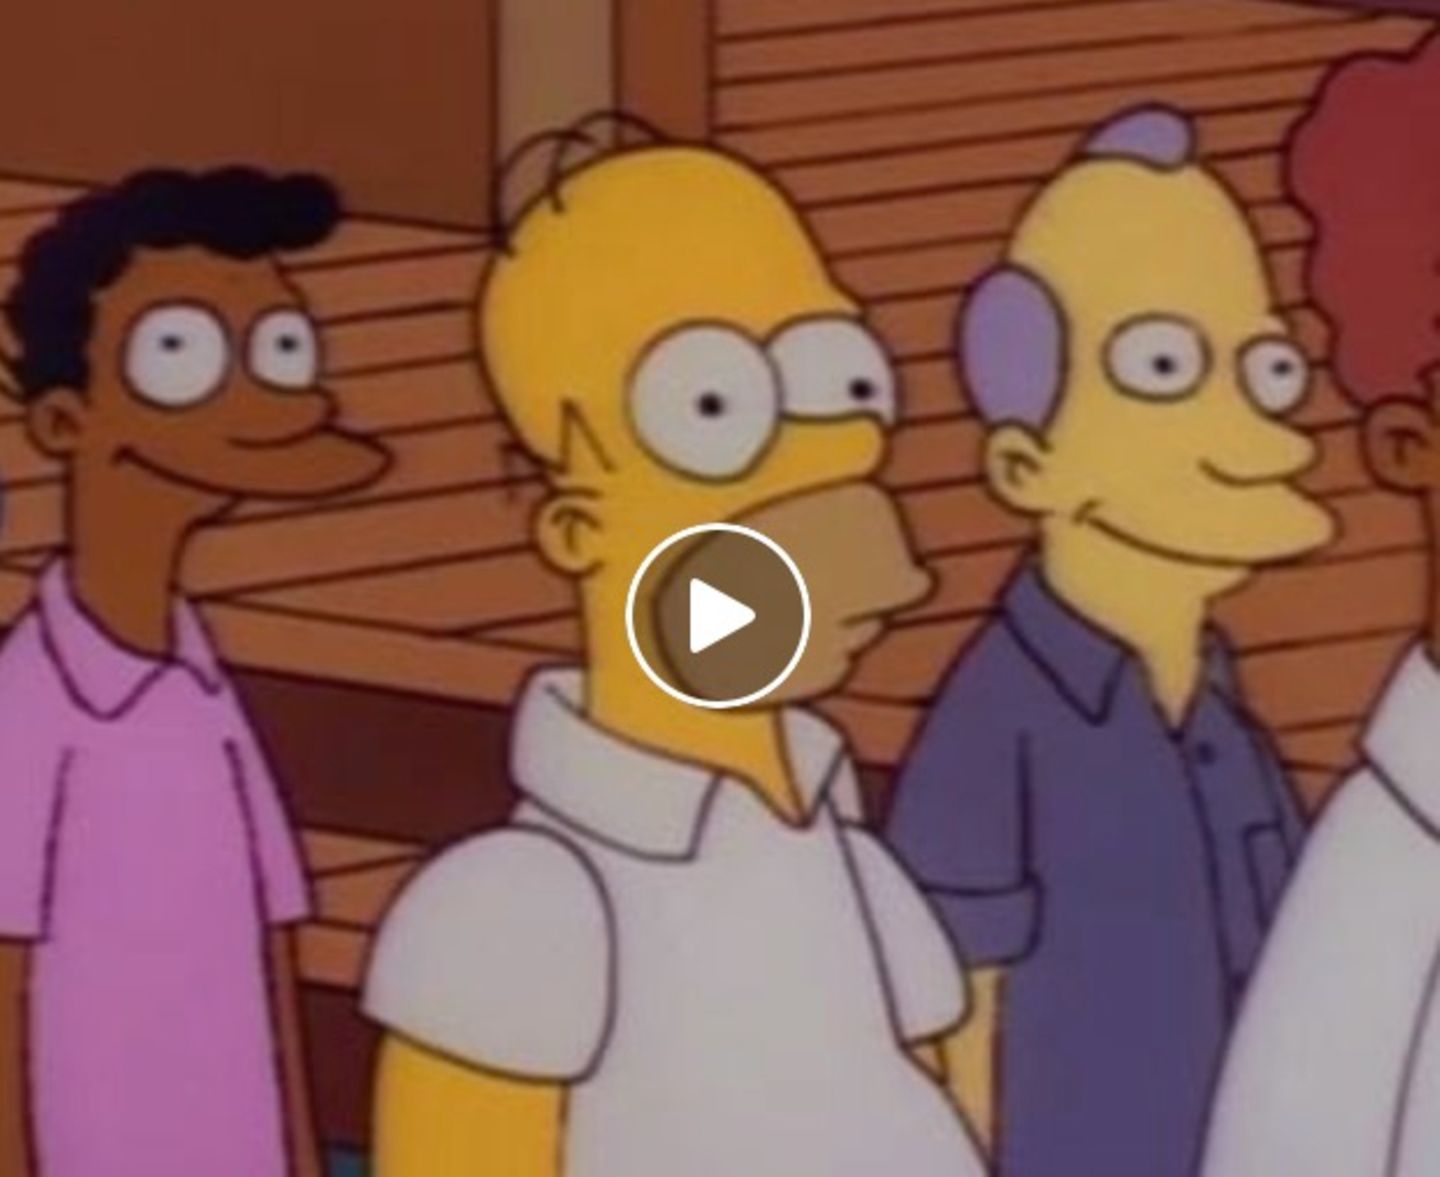 Dieser TV-Sender spielt eine Simpsons-Szene in Dauerschleife